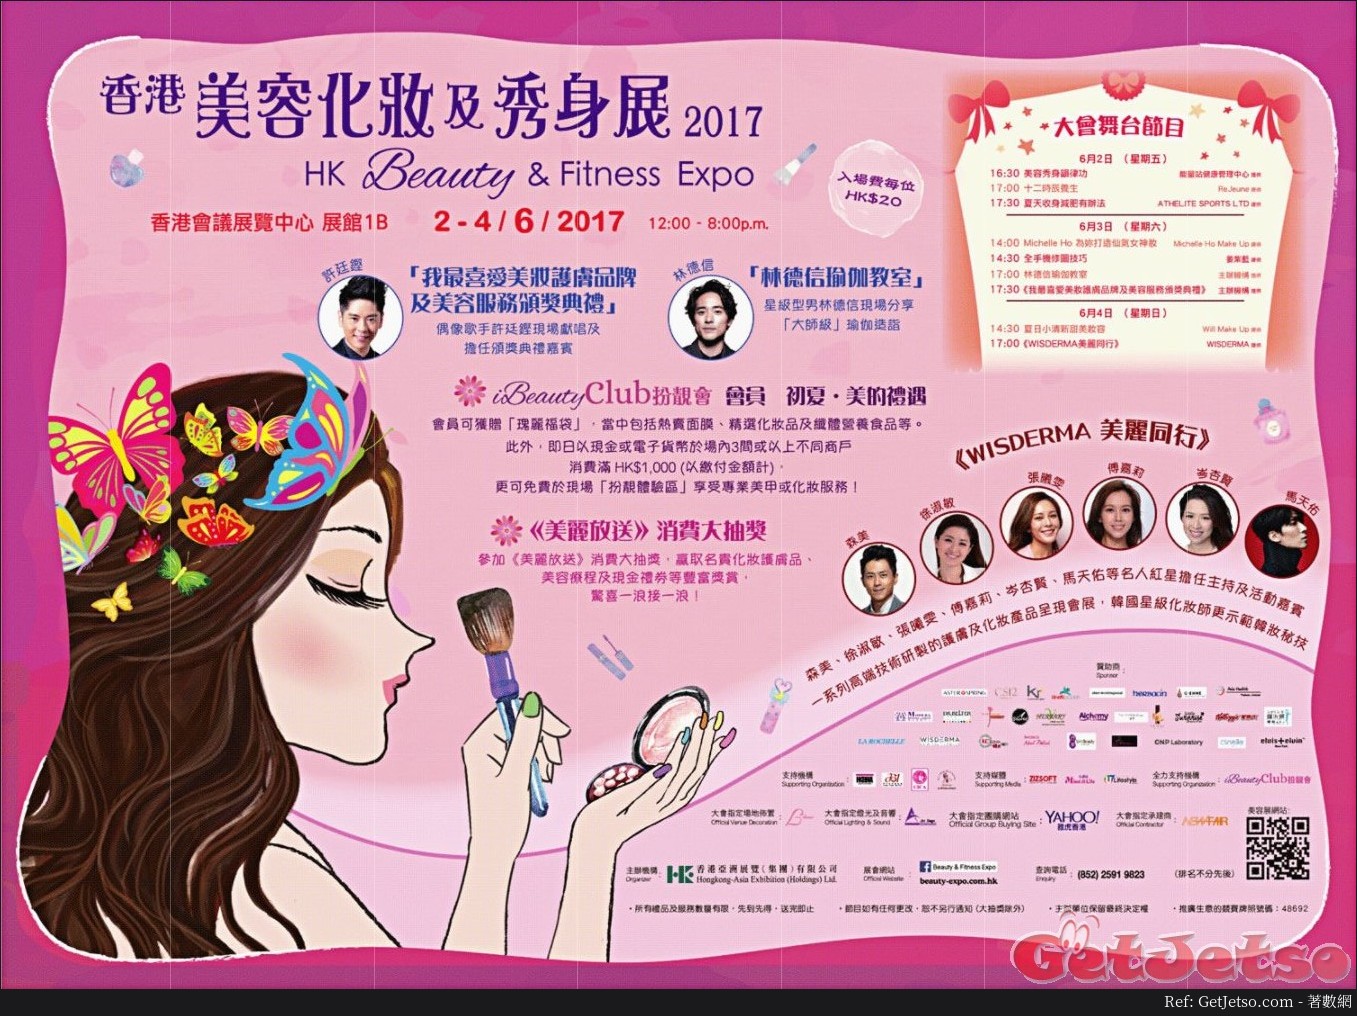 香港美容化妝及秀身展2017(17年6月2-4日)圖片1